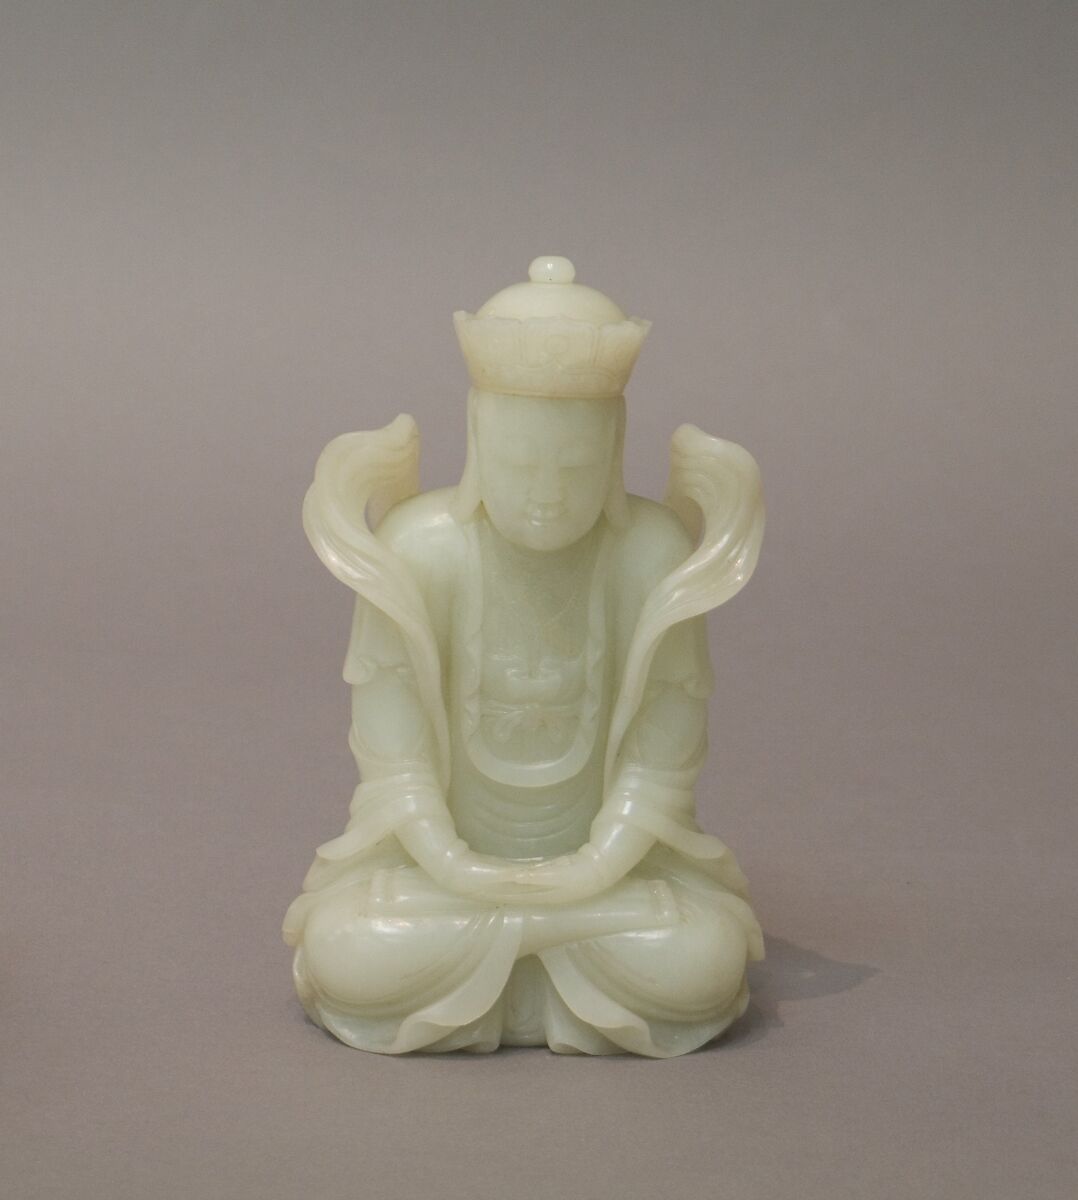 Figure of Bodhisattva, Jade (nephrite), China